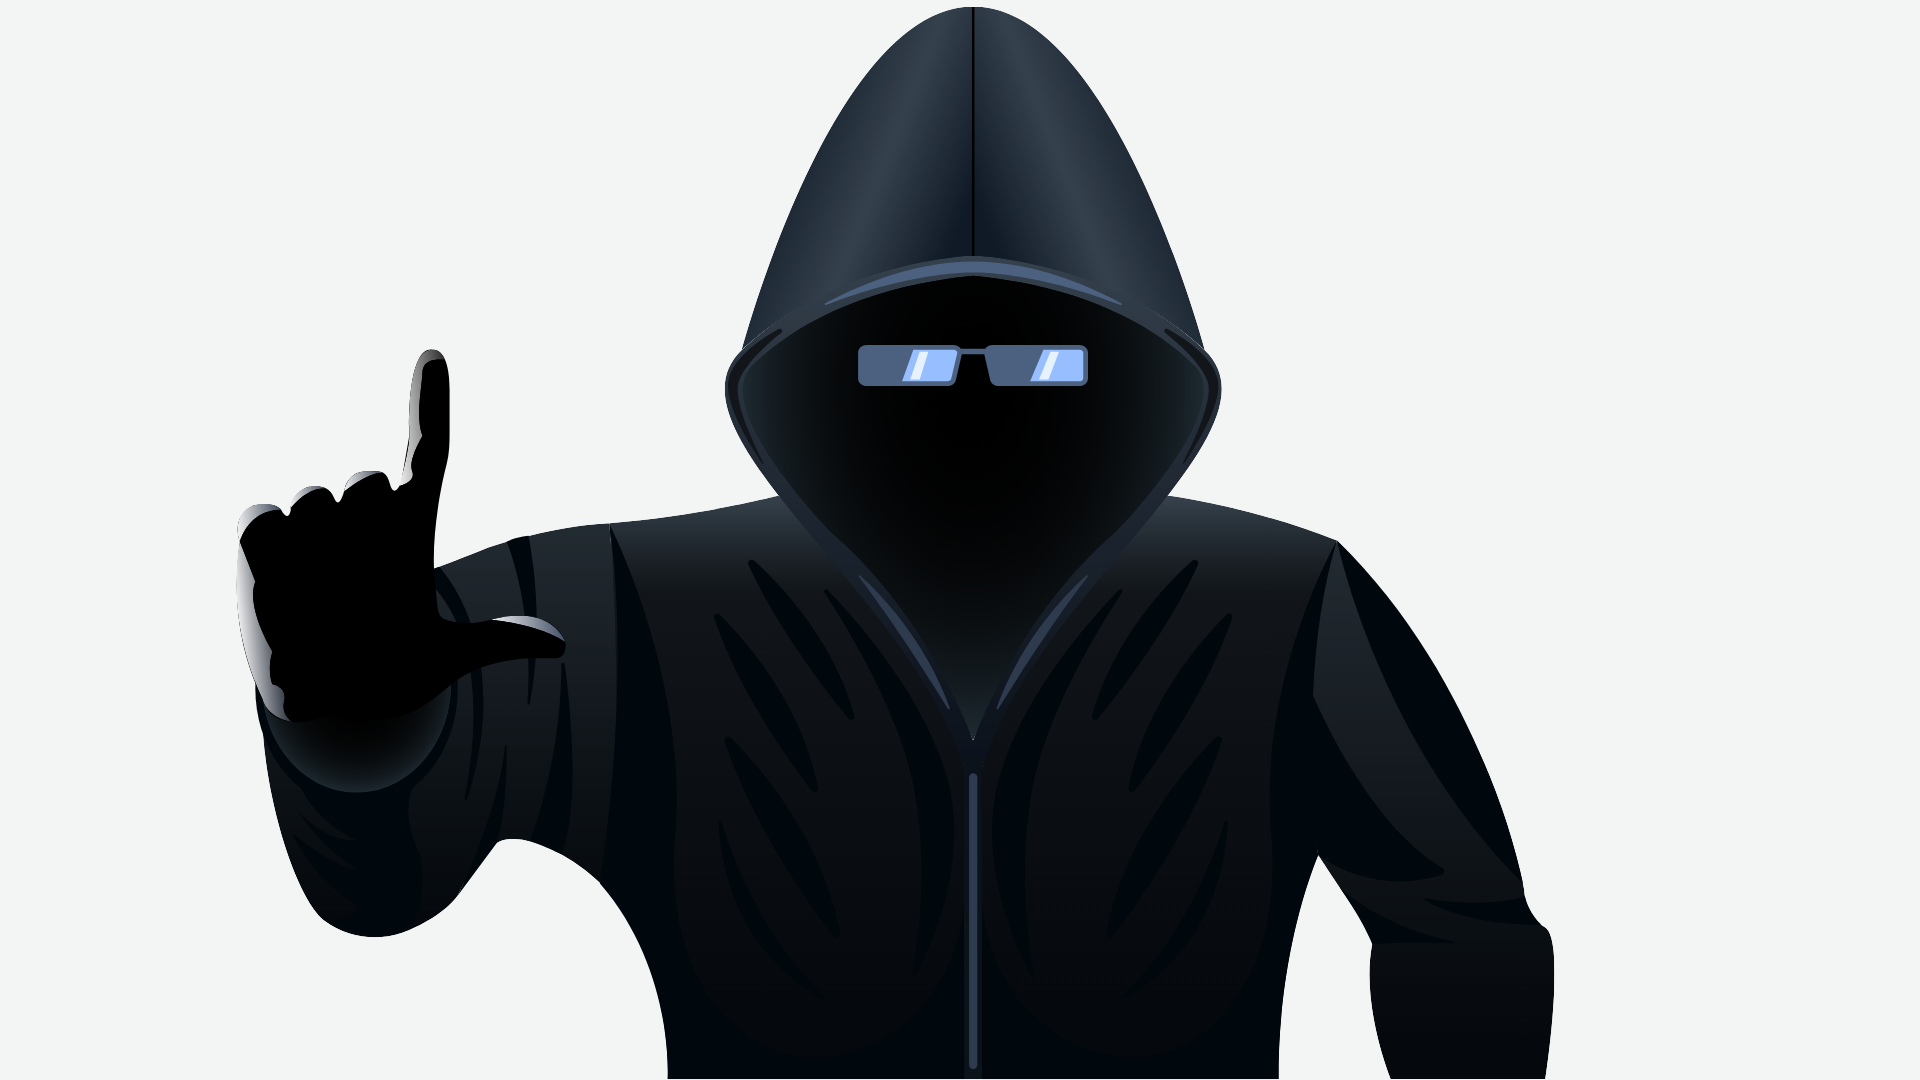 黑客的黑影再次笼罩医疗 – 黑猫勒索软件攻击解析